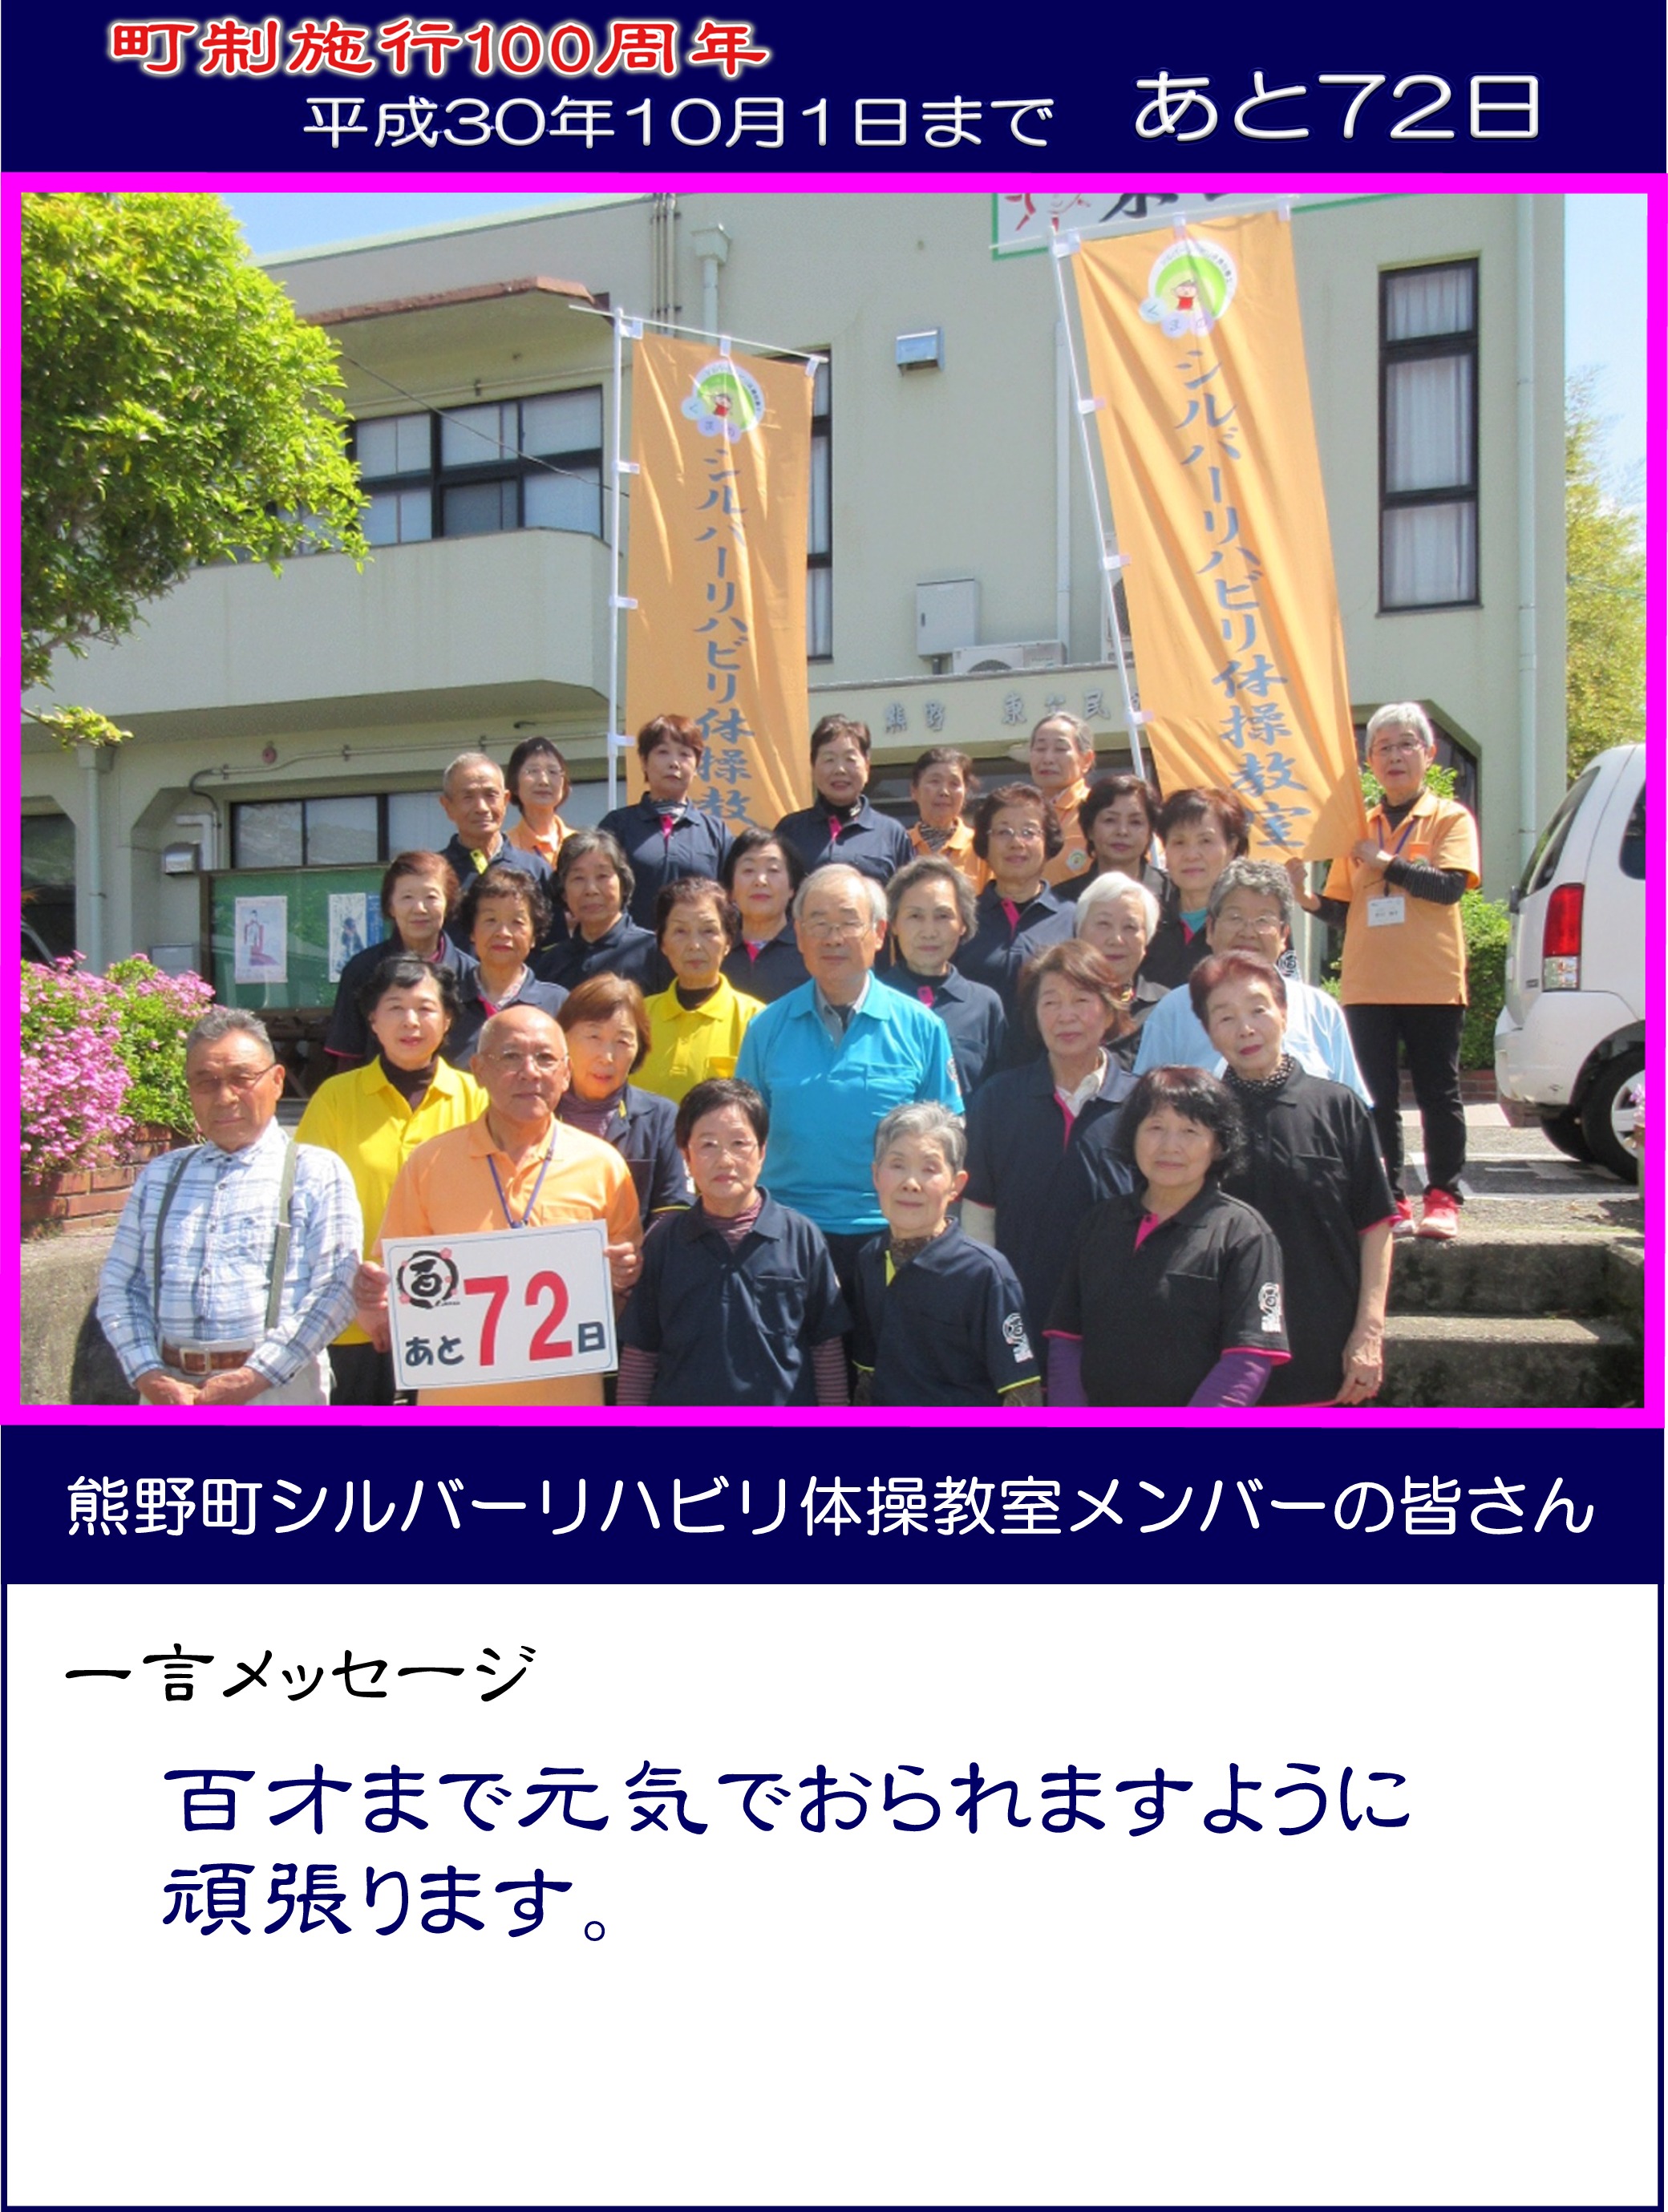 カウントダウン写真熊野町シルバーリハビリ体操教室メンバーの皆さん72